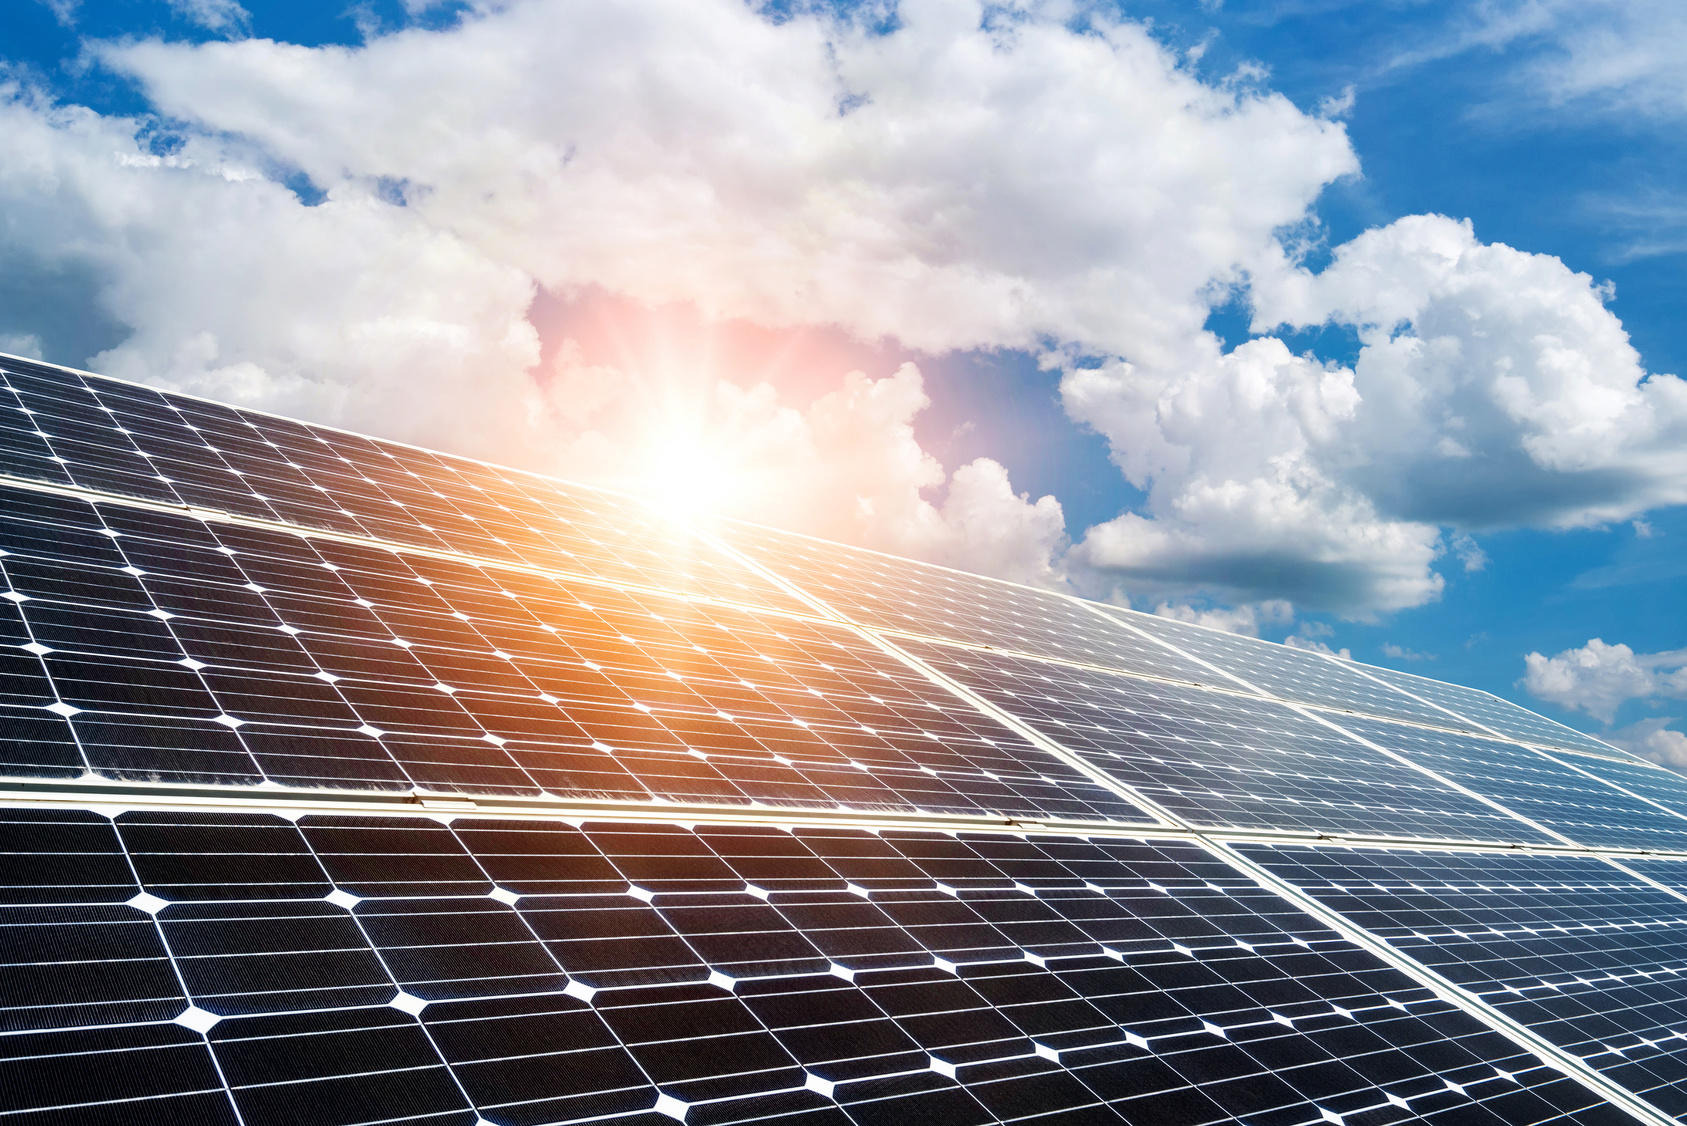 Solarpanel, Photovoltaik bei scheinender Sonne